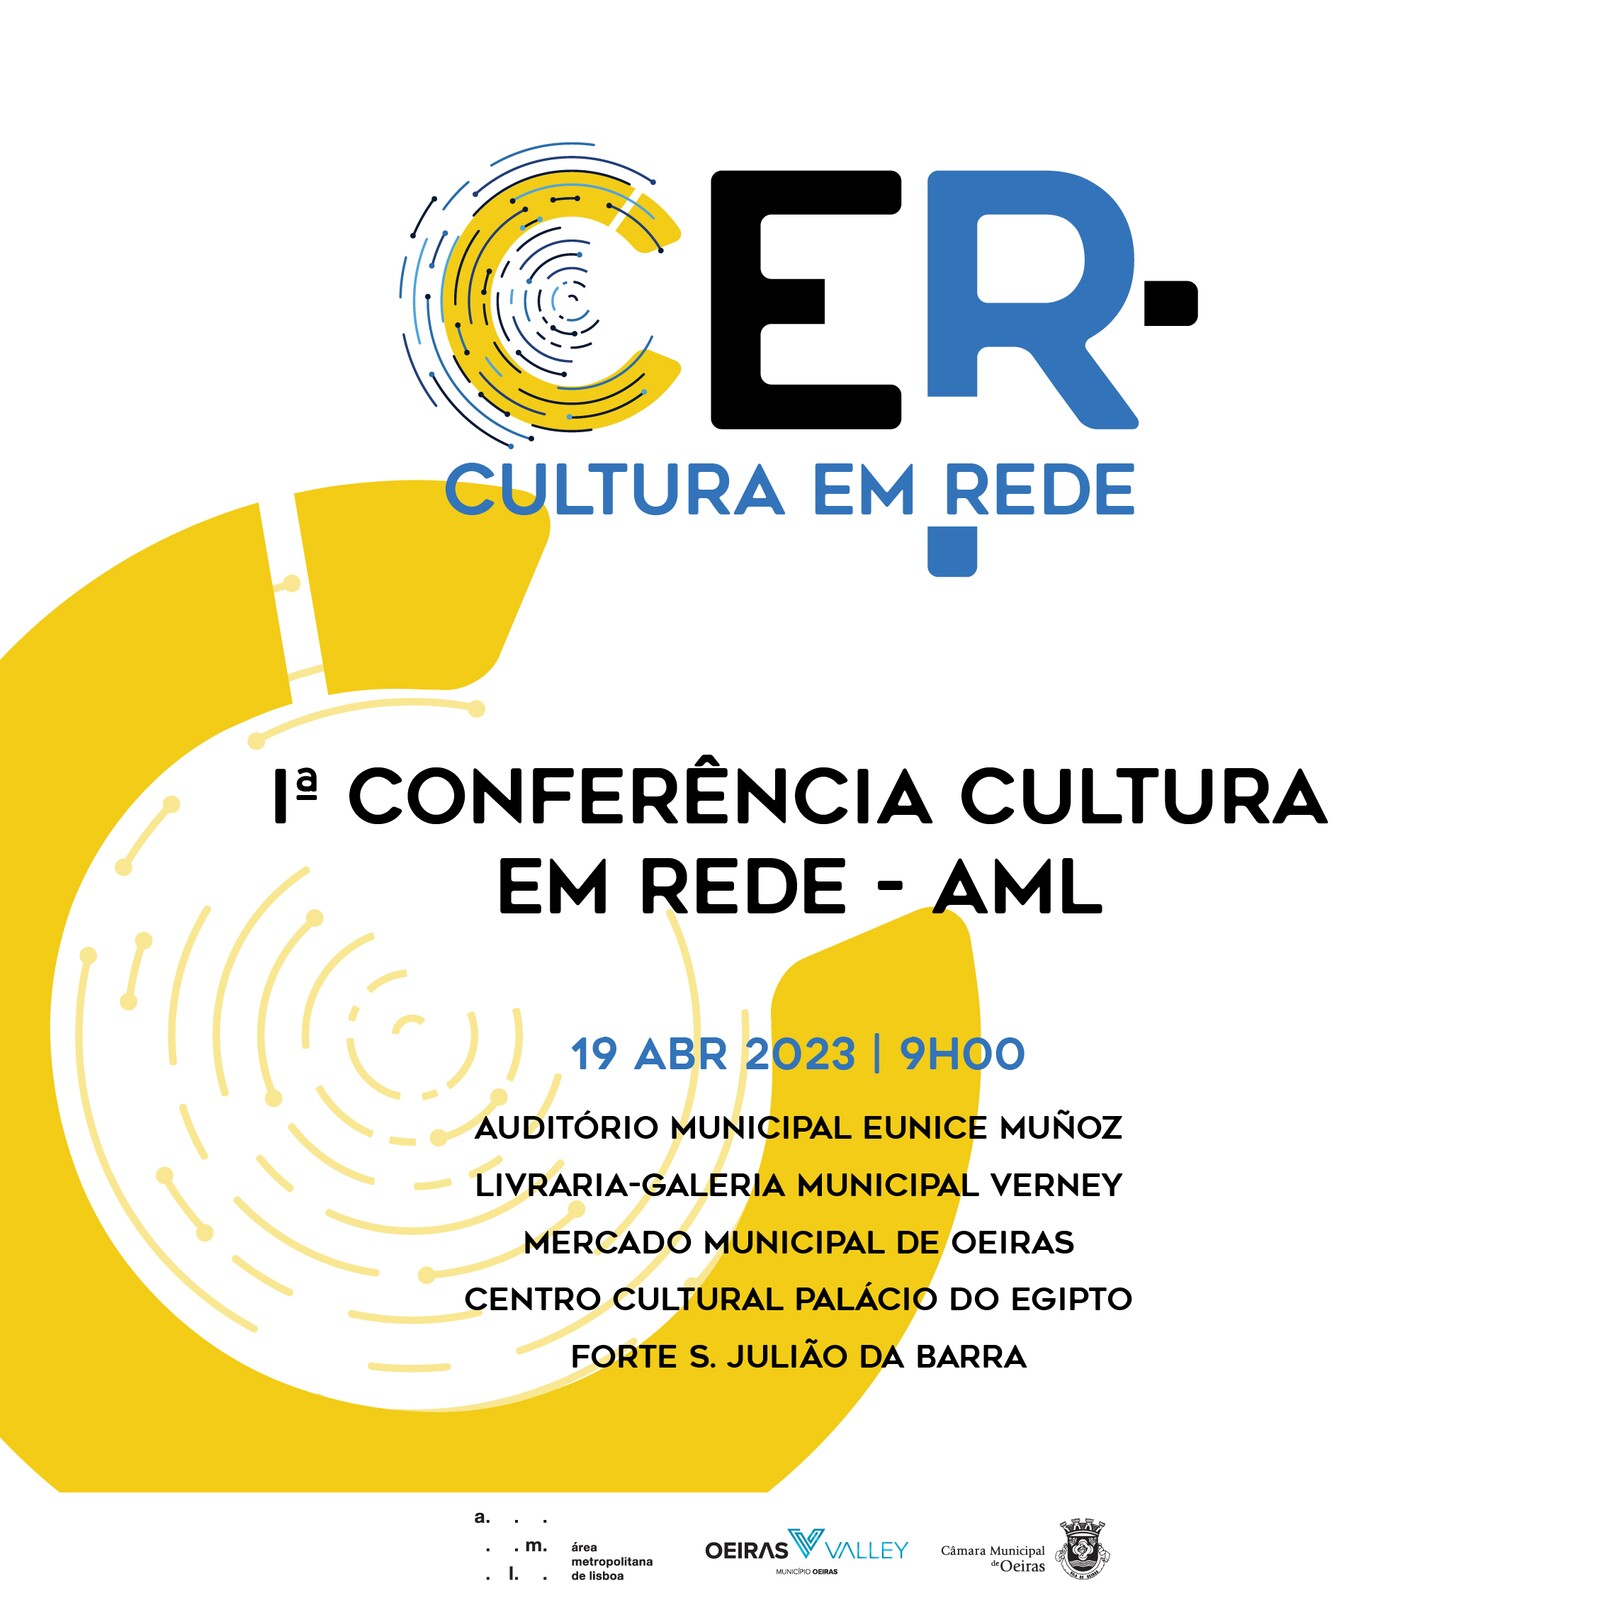 Conferência vai colocar a cultura em rede no centro da área metropolitana de Lisboa